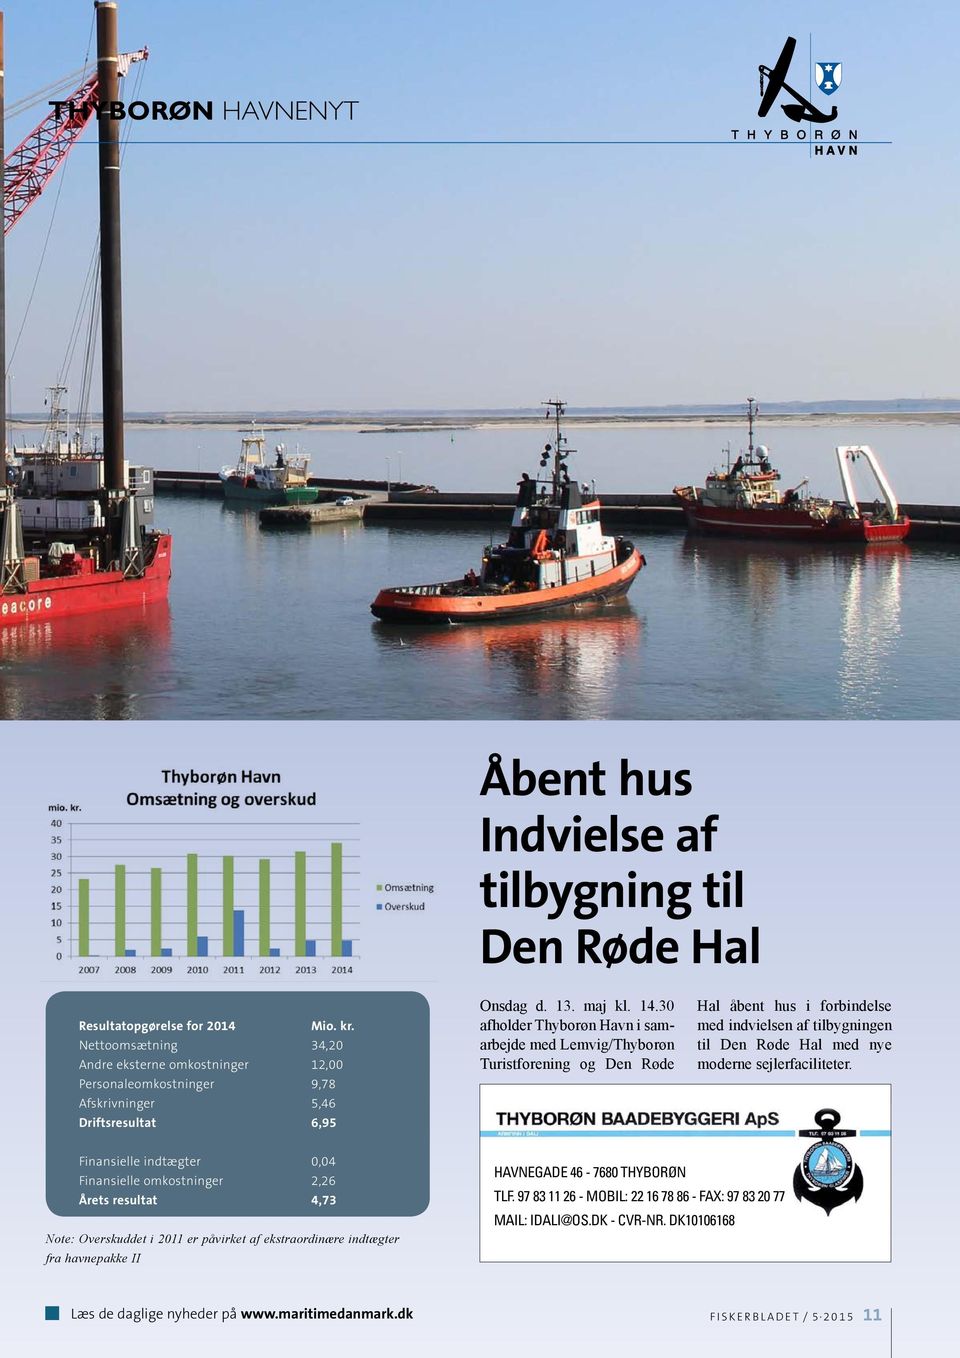 30 afholder Thyborøn Havn i samarbejde med Lemvig/Thyborøn Turistforening og Den Røde Hal åbent hus i forbindelse med indvielsen af tilbygningen til Den Røde Hal med nye moderne sejlerfaciliteter.